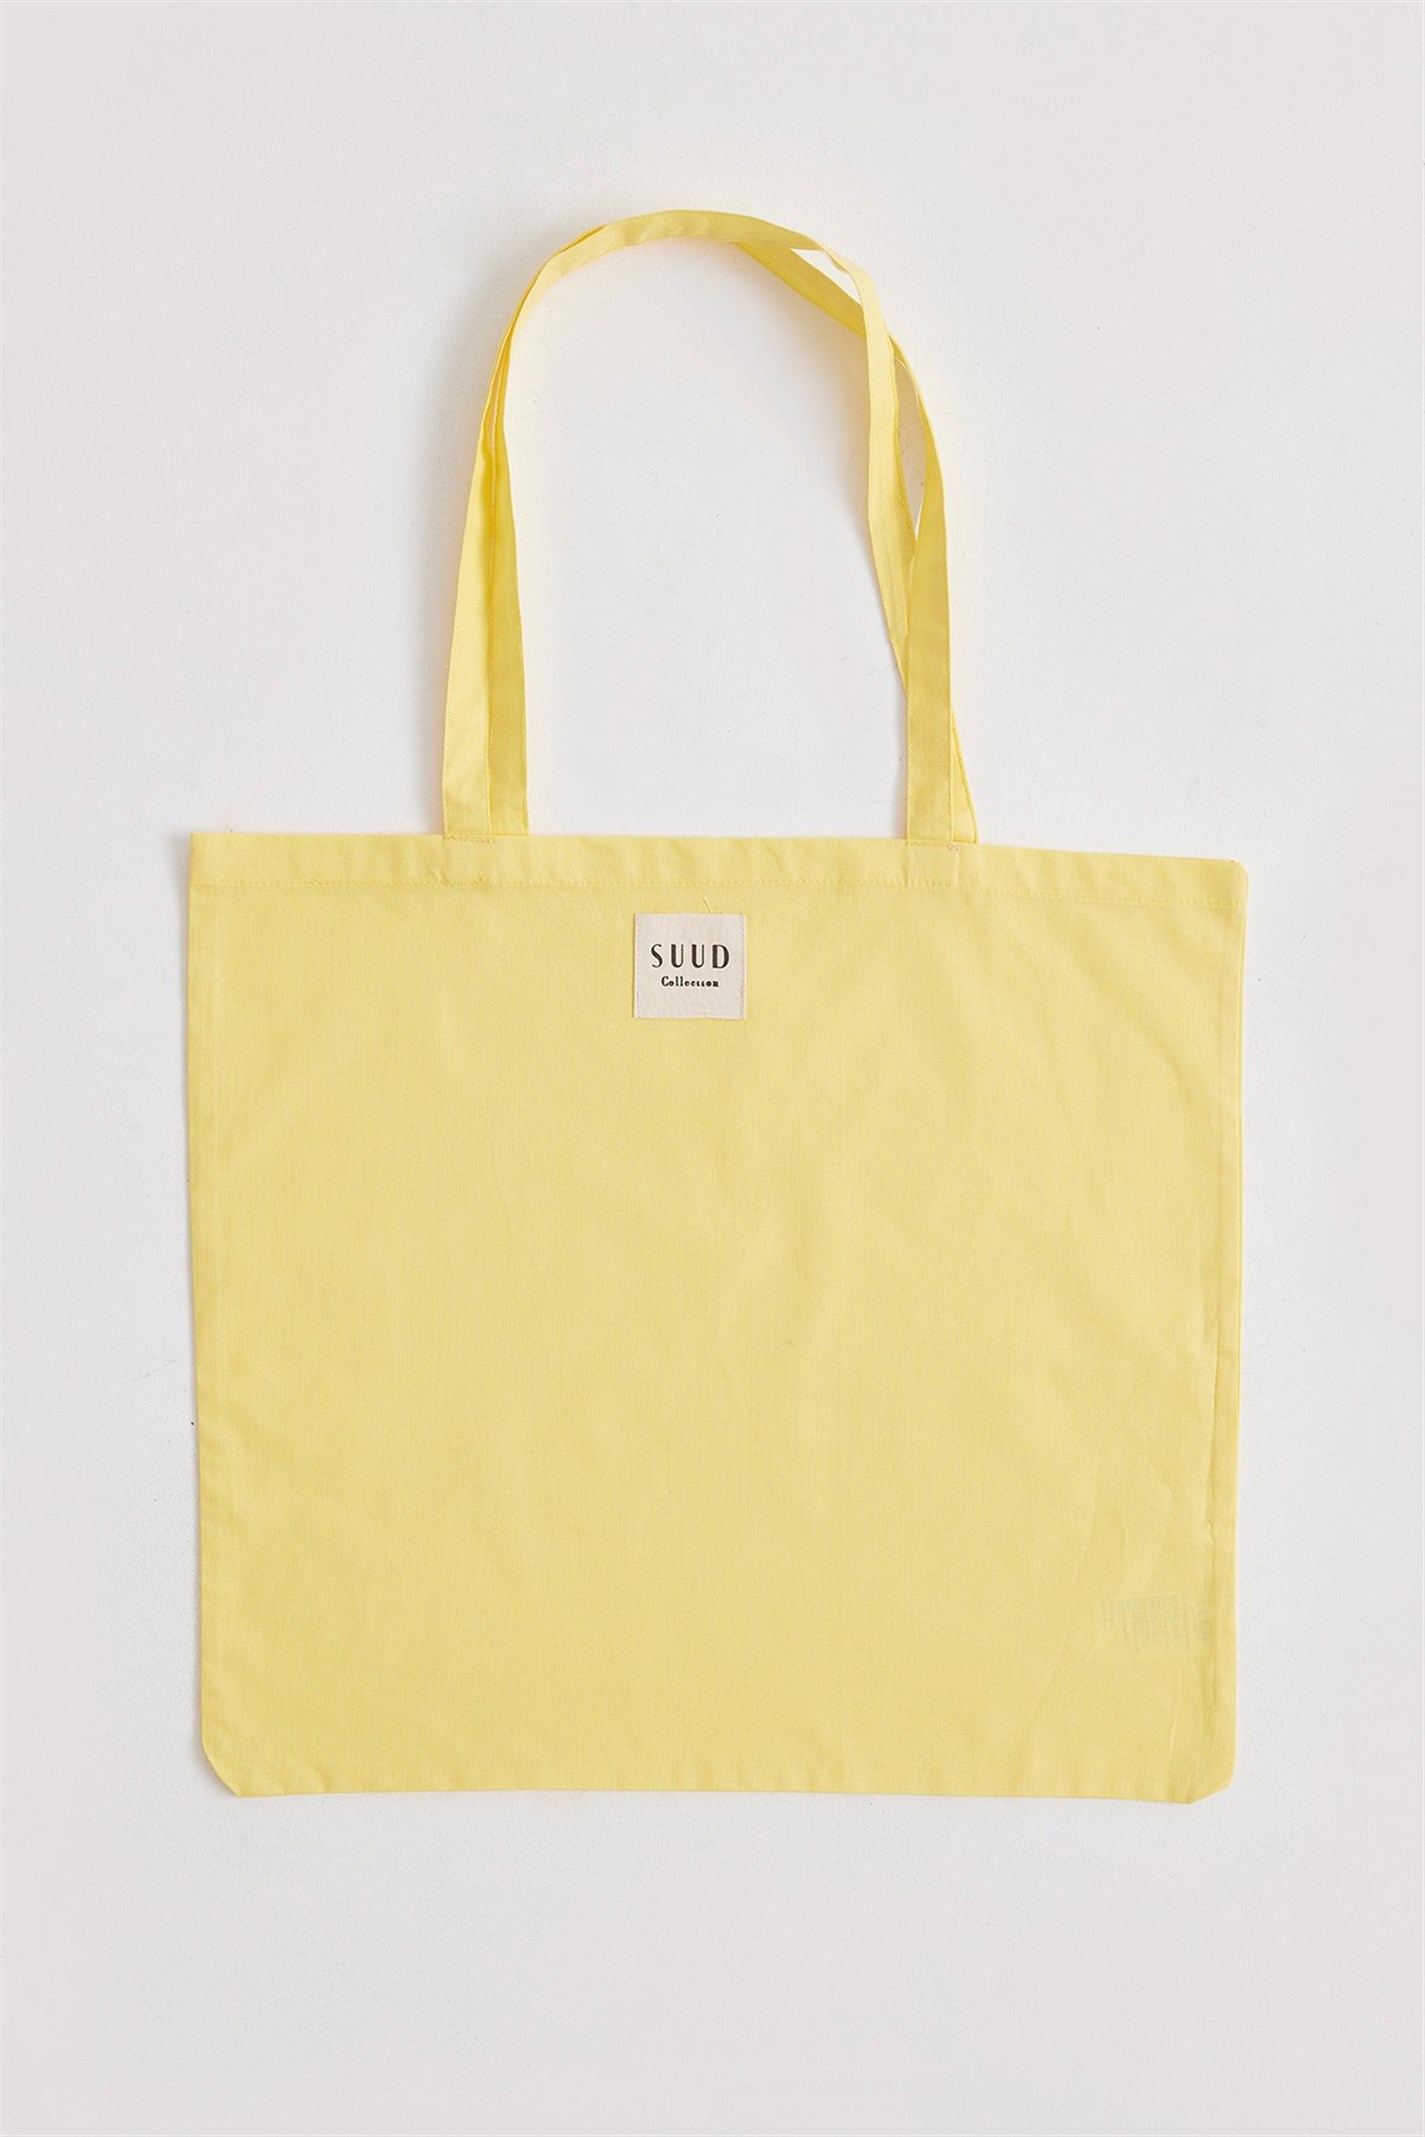 Sarı Natürel Bez Çanta | Suud Collection